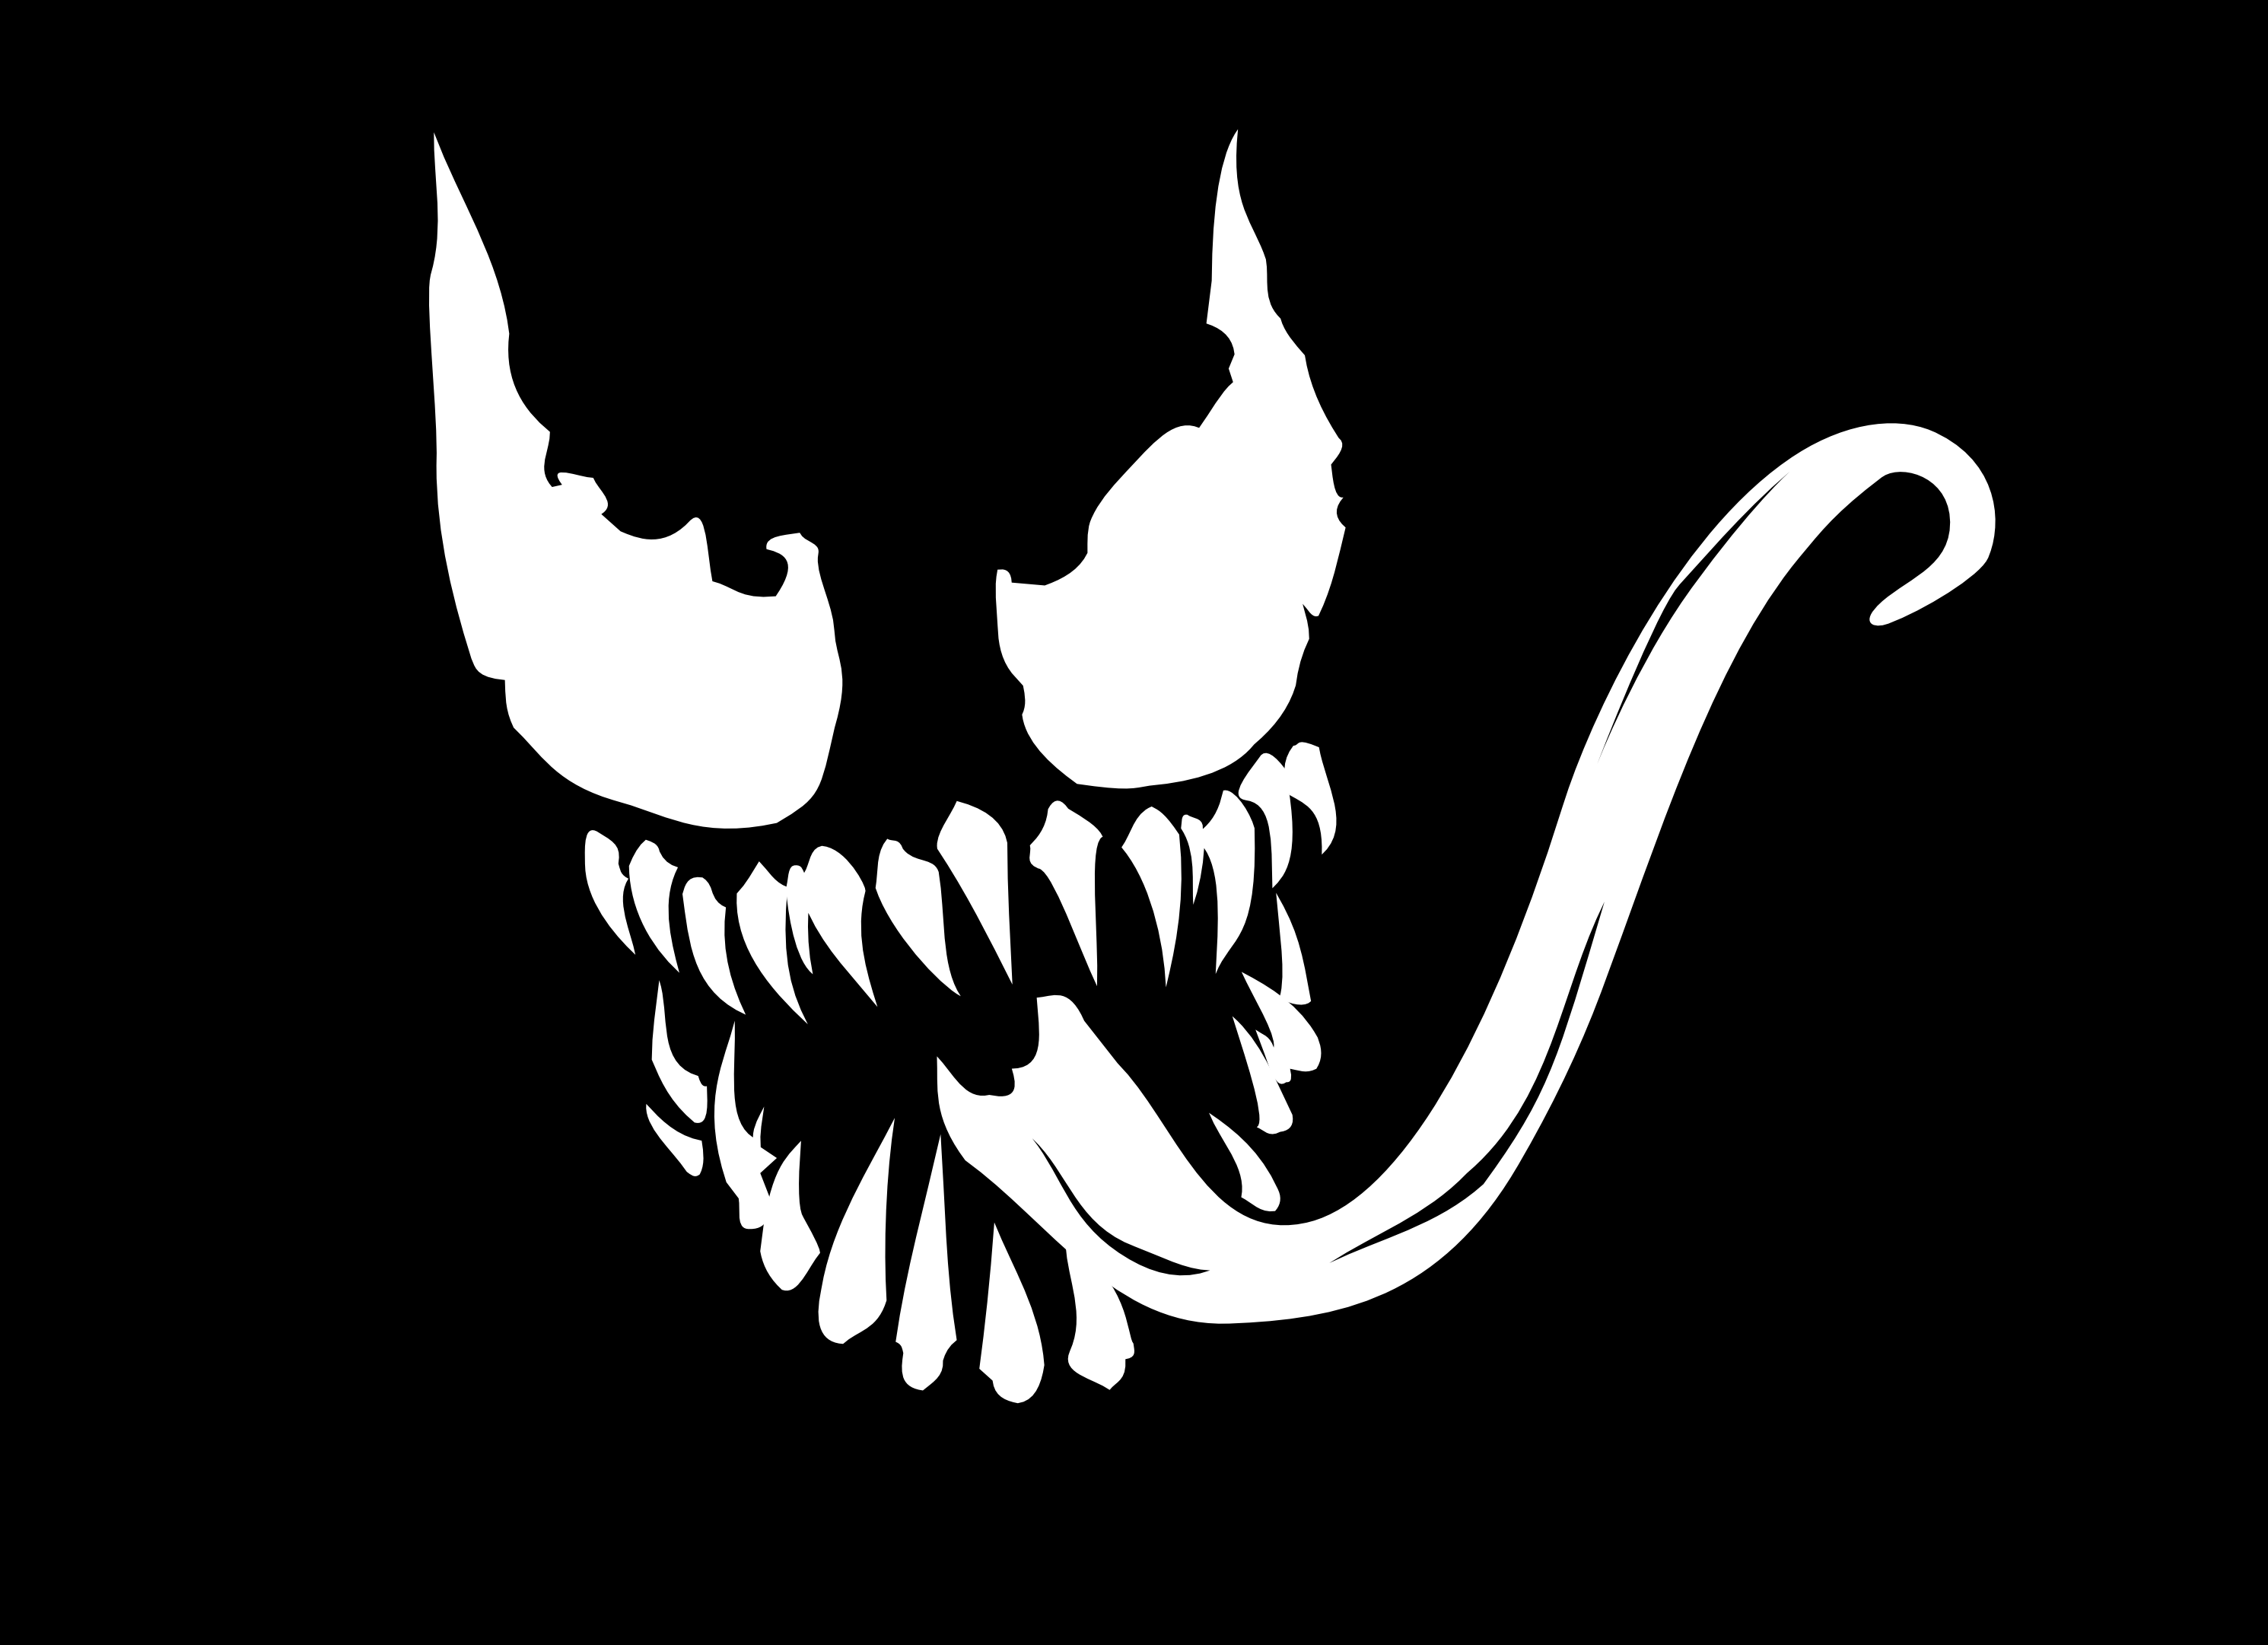 Free Venom Logo Png, Download Free Venom Logo Png png images, Free ...